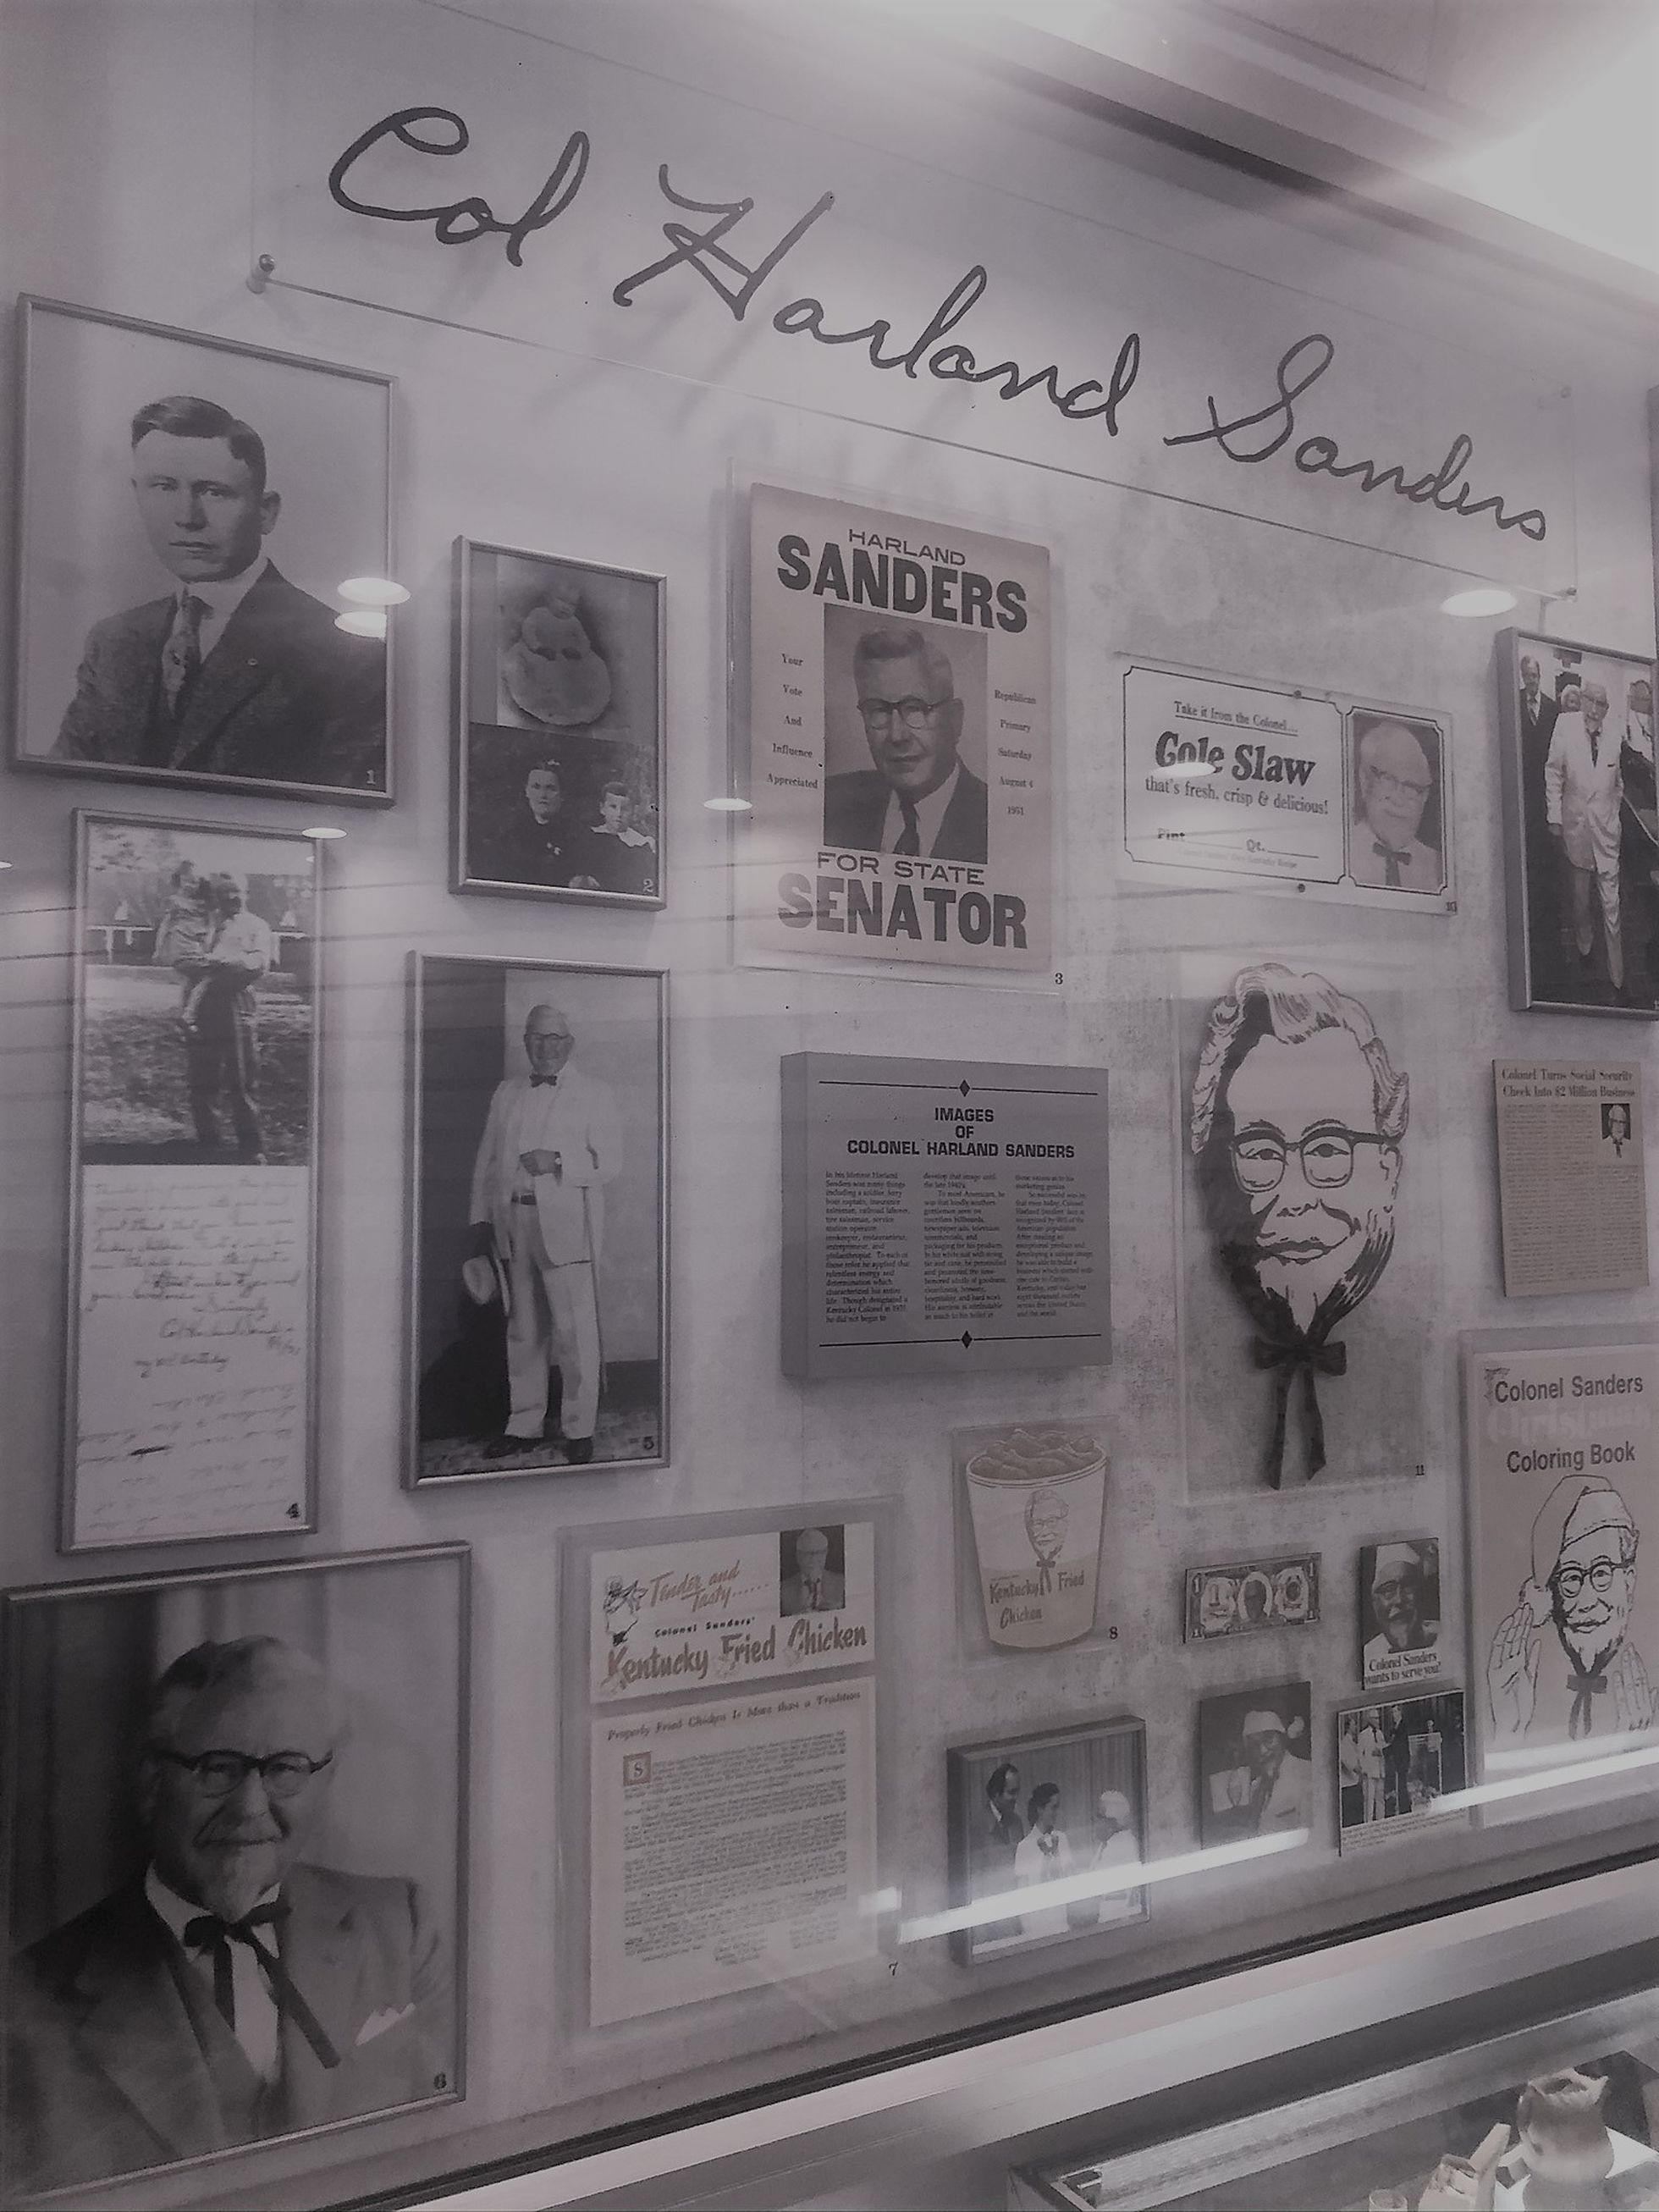 KFC kiirtoidurestoranist, mis on ehitatud kolonel Sandersi esimese restorani lähedusse, leiab eest Sandersile pühendatud väljapaneku. Sellelt on näha, et Sanders kandideeris ka senaatoriks.